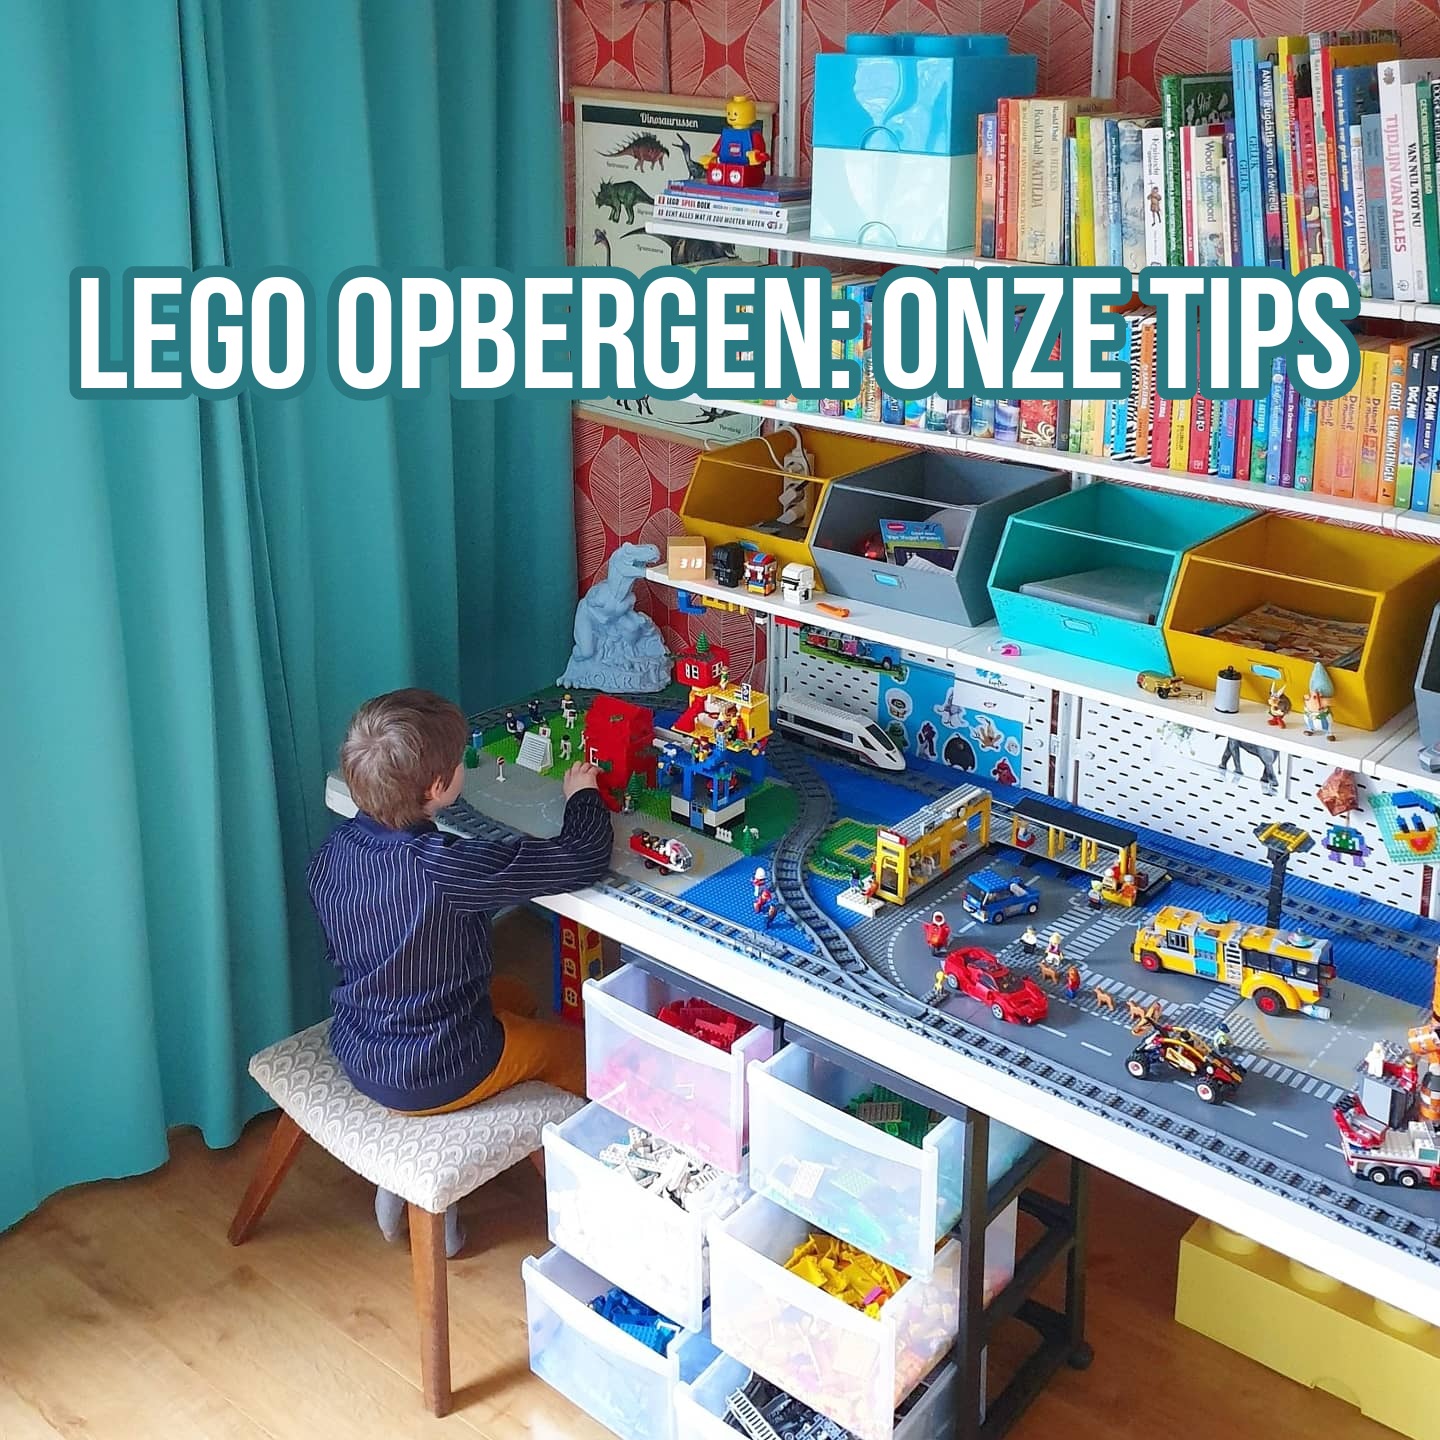 Omzet Kader ik heb nodig LEGO opbergen: opbergdoos / opbergbox / opberglade / speeltafel Leuk met  kids